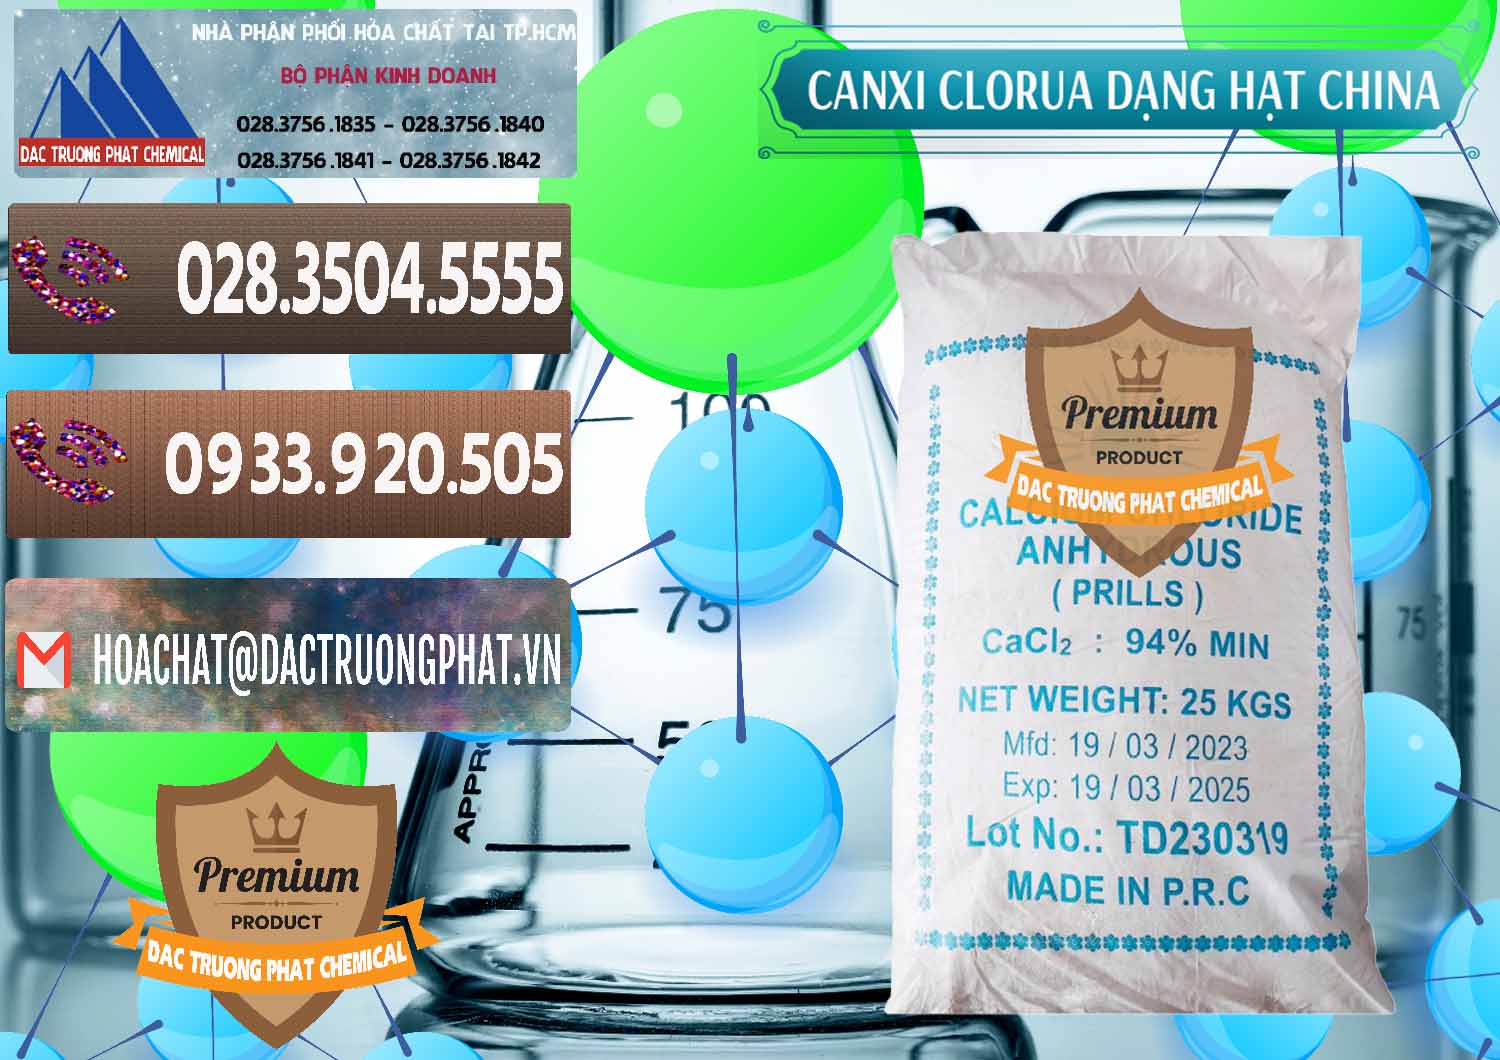 Cty chuyên phân phối & bán CaCl2 – Canxi Clorua 94% Dạng Hạt Trung Quốc China - 0373 - Công ty phân phối _ cung cấp hóa chất tại TP.HCM - hoachatviet.net